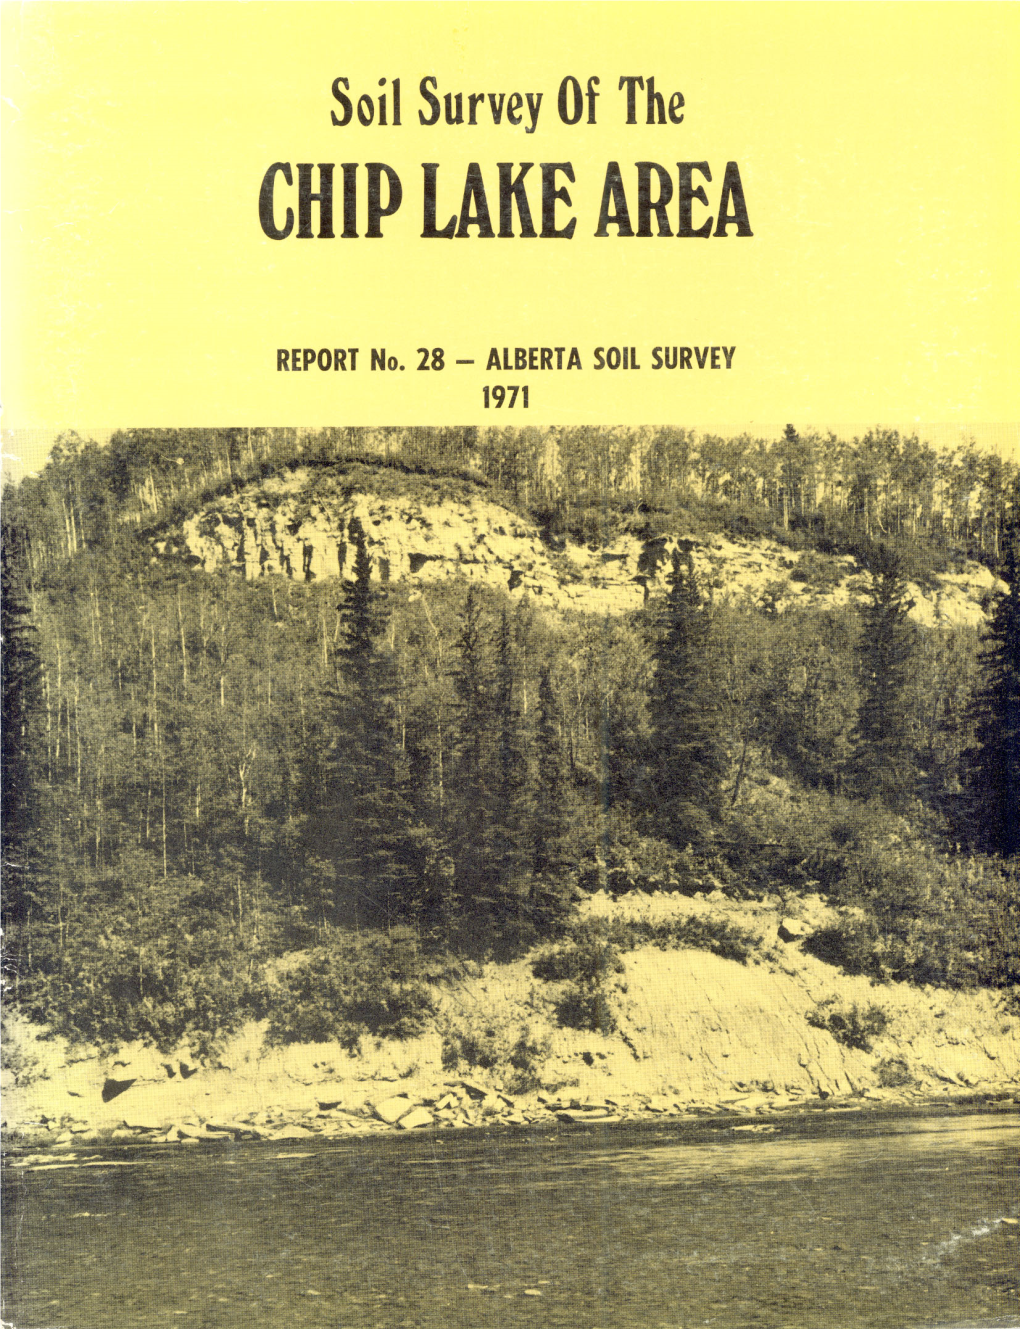 Reconnaissance Soil Survey of the Chip Lake Area